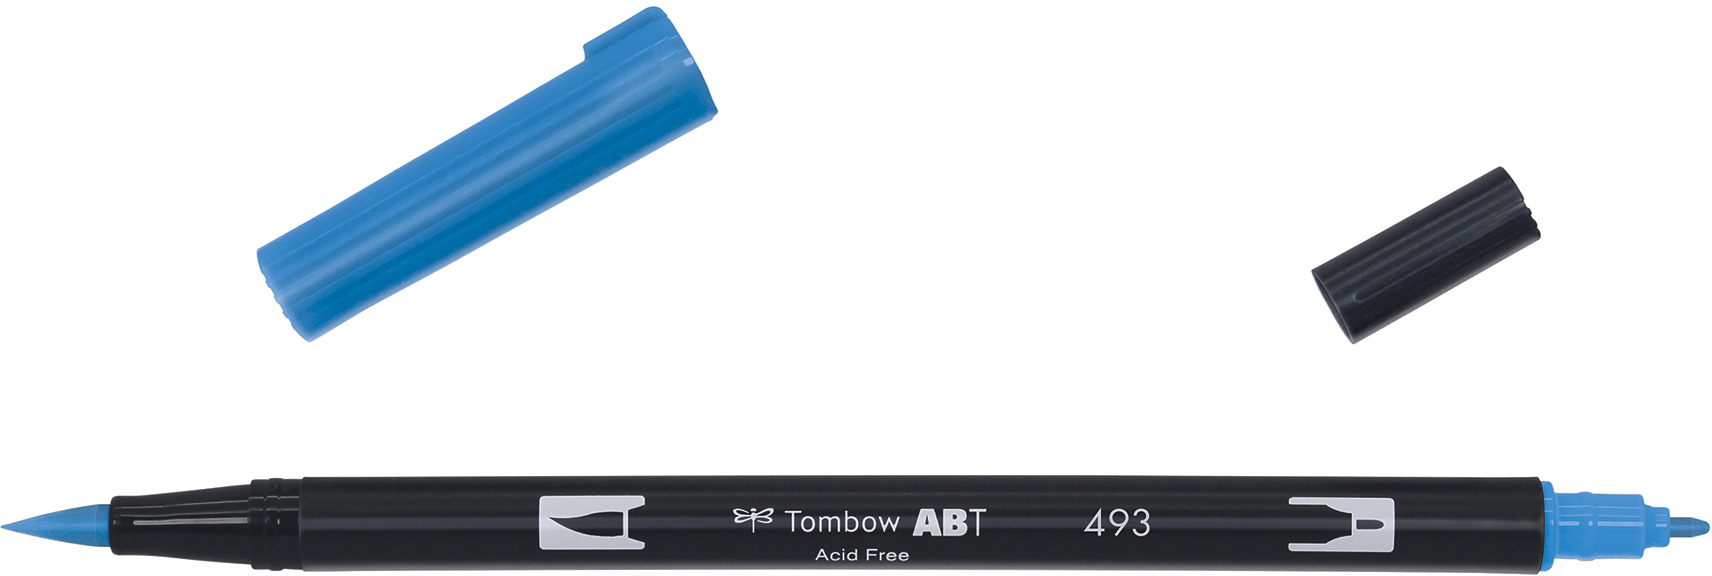 TOMBOW Dual Brush Pen ABT 493 reflex blue reflex blue